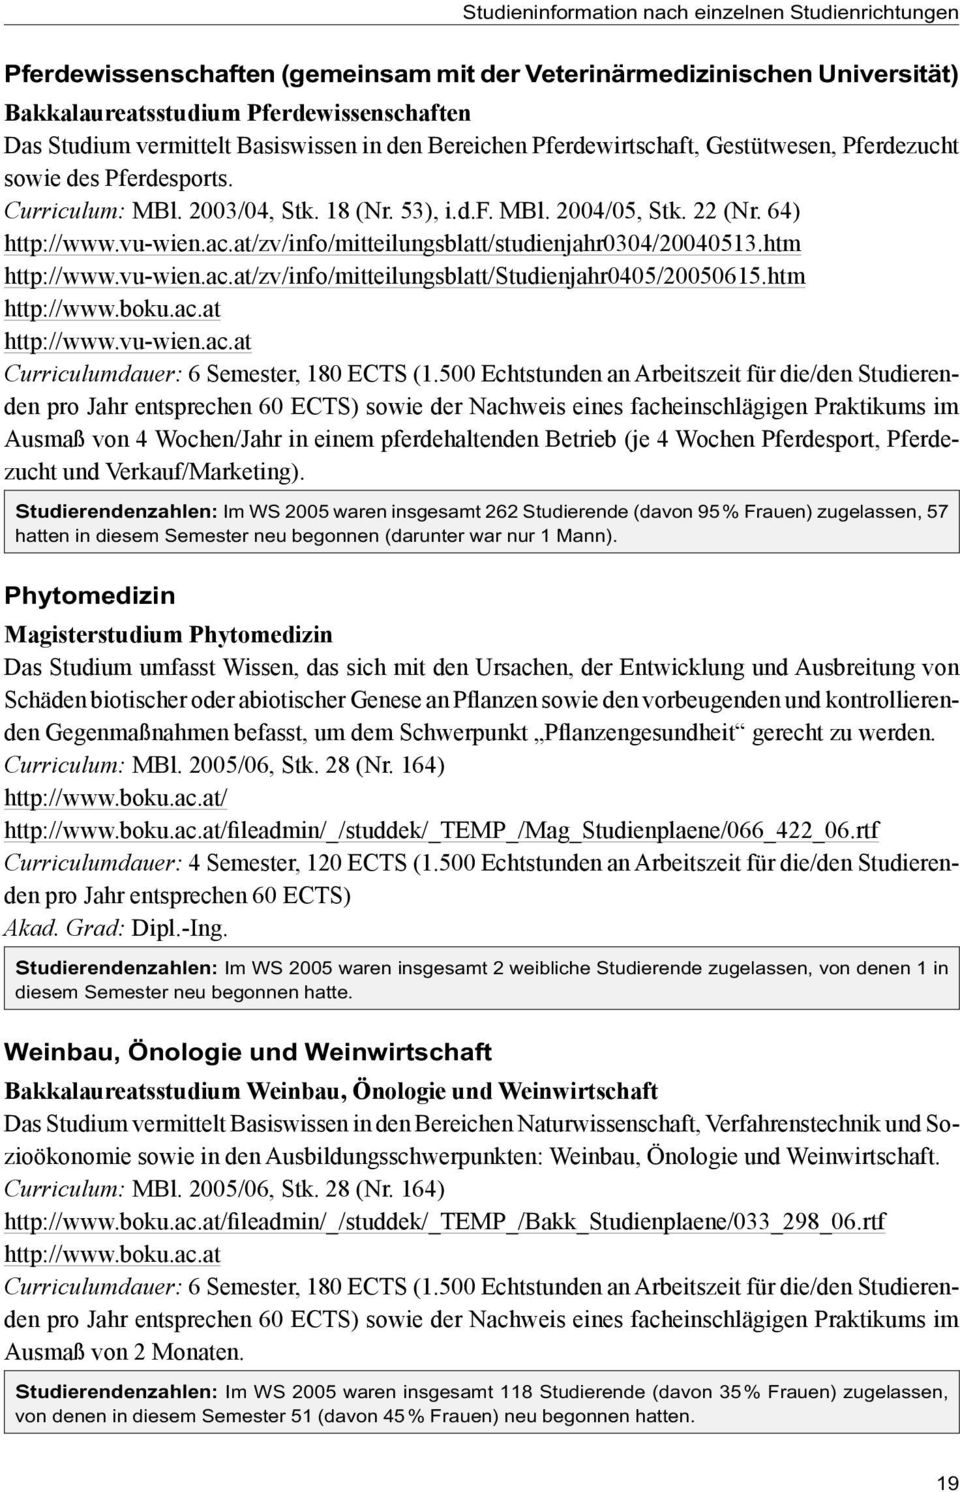 at/zv/info/mitteilungsblatt/studienjahr0304/20040513.htm http://www.vu-wien.ac.at/zv/info/mitteilungsblatt/studienjahr0405/20050615.htm http://www.boku.ac.at http://www.vu-wien.ac.at Curriculumdauer: 6 Semester, 180 ECTS (1.